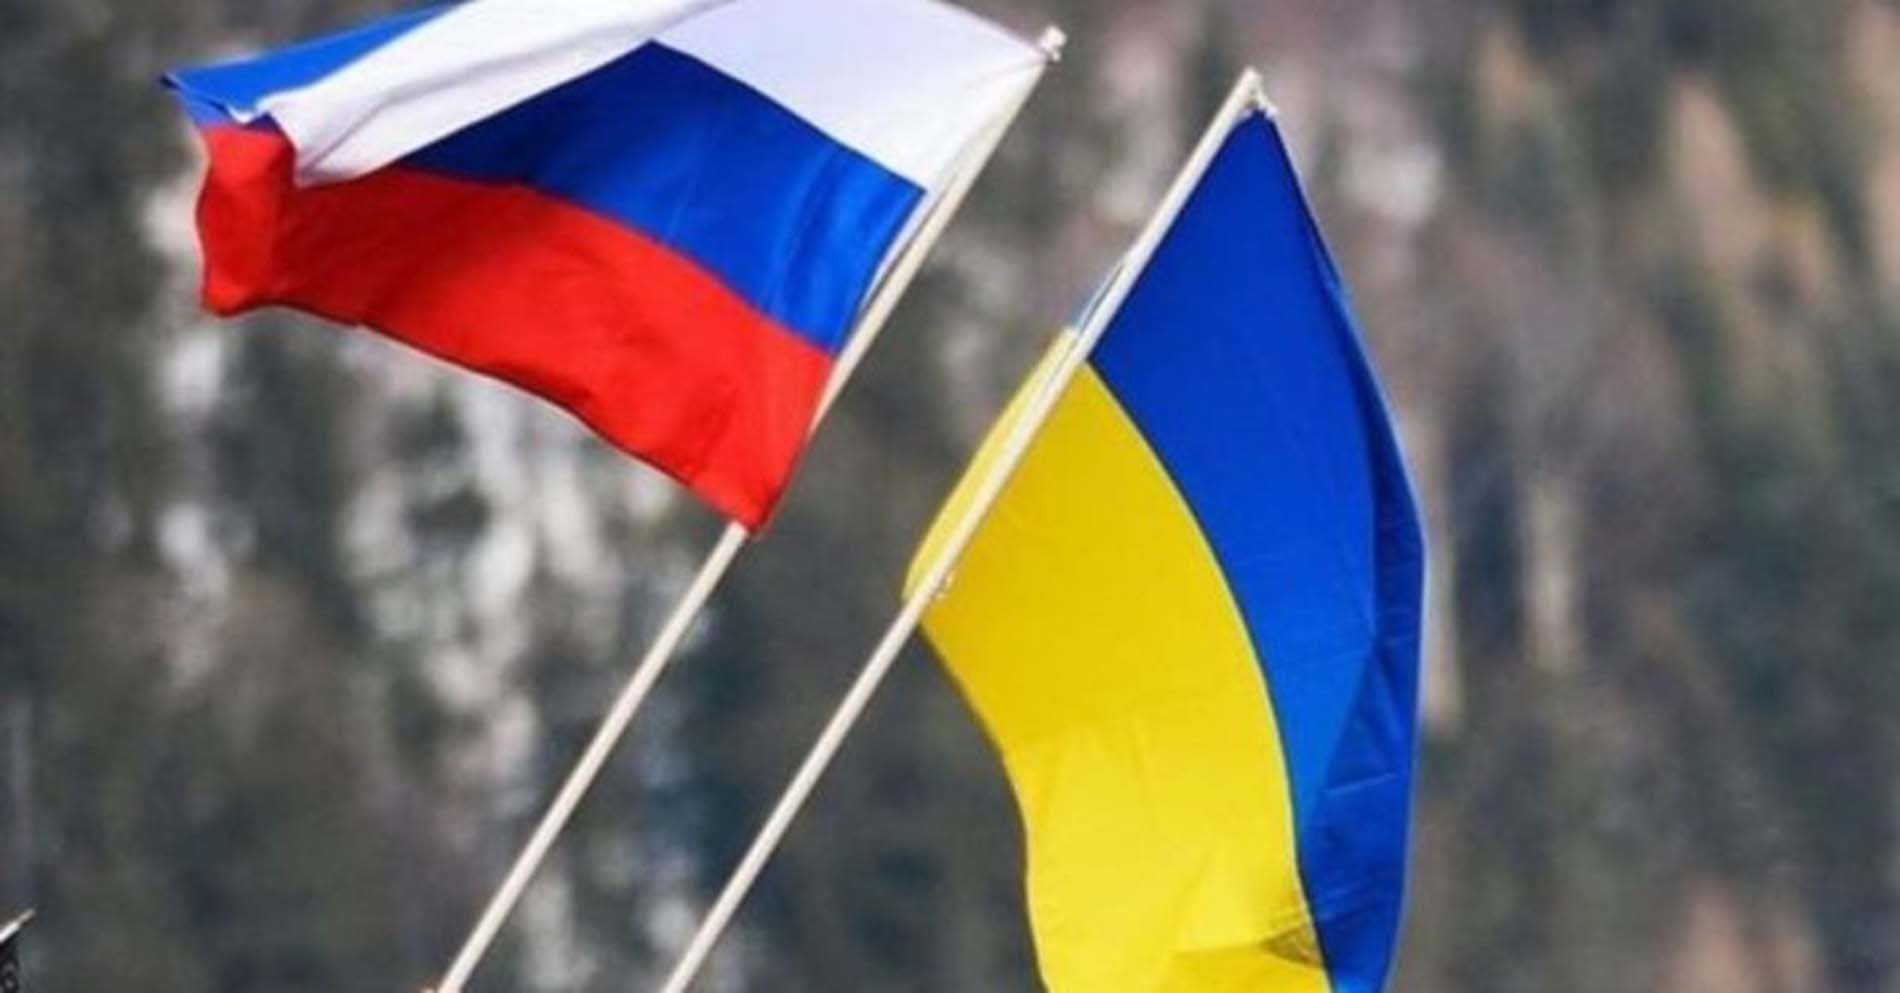 Müzakereler yarın başlıyor! Rusya - Ukrayna görüşmelerinin yeri ve saati kesinleşti!